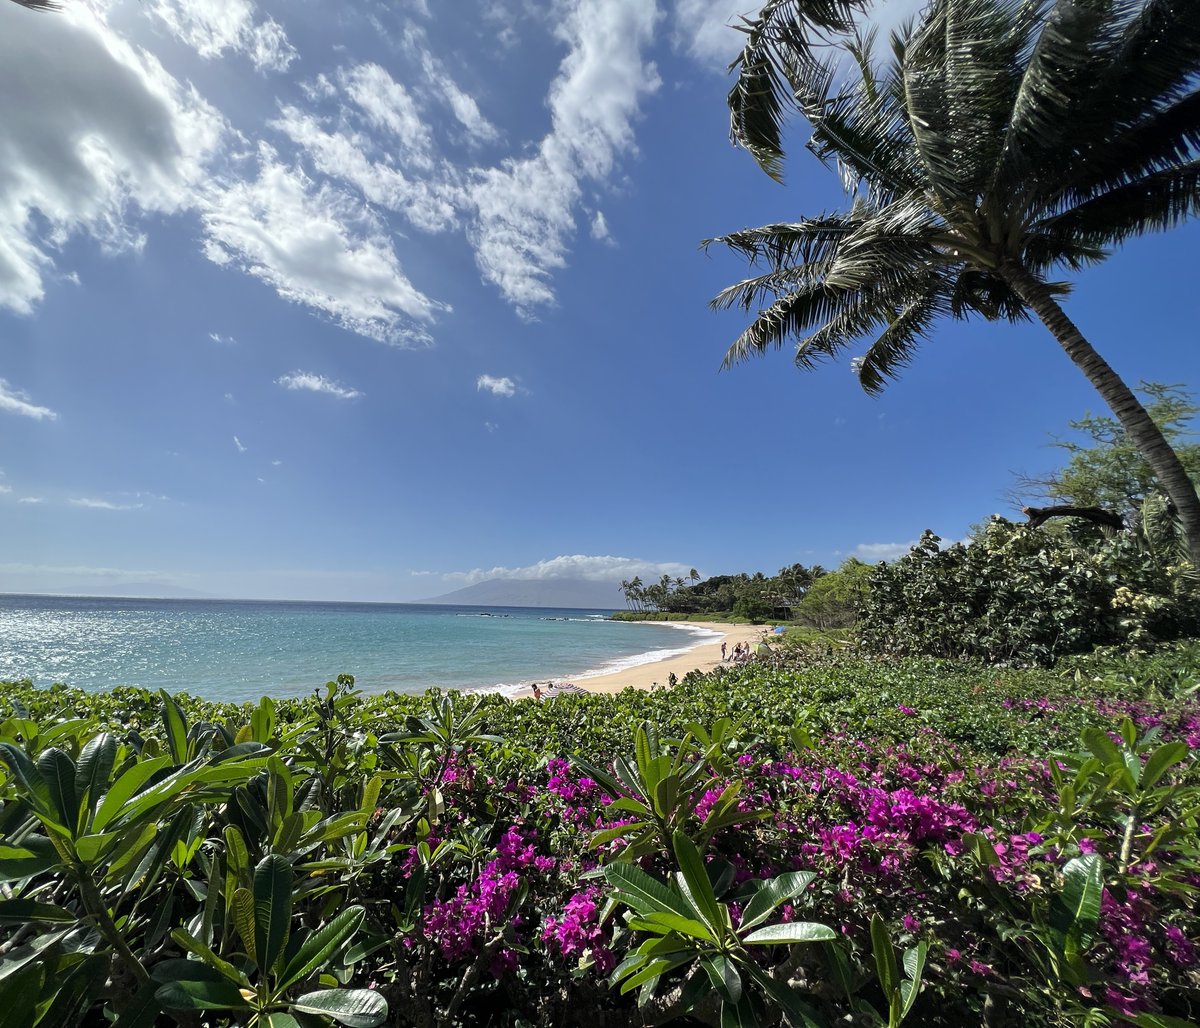 Happy Aloha Friday!🌺🏝
MauiRealEstateAdvisors.com
#MauiRealEstate #LuxuryHomes #LuxuryRealEstate #Maui #IslandLife #MauiForSale #Kihei #Wailea #MauiHome #MauiRealEstateAdvisors #Kula #Luxury #OceanView #Makena #ExploreMaui #Hawaii #SouthMaui #BeachFront #Aloha #Paradise #MauiNoKaOi